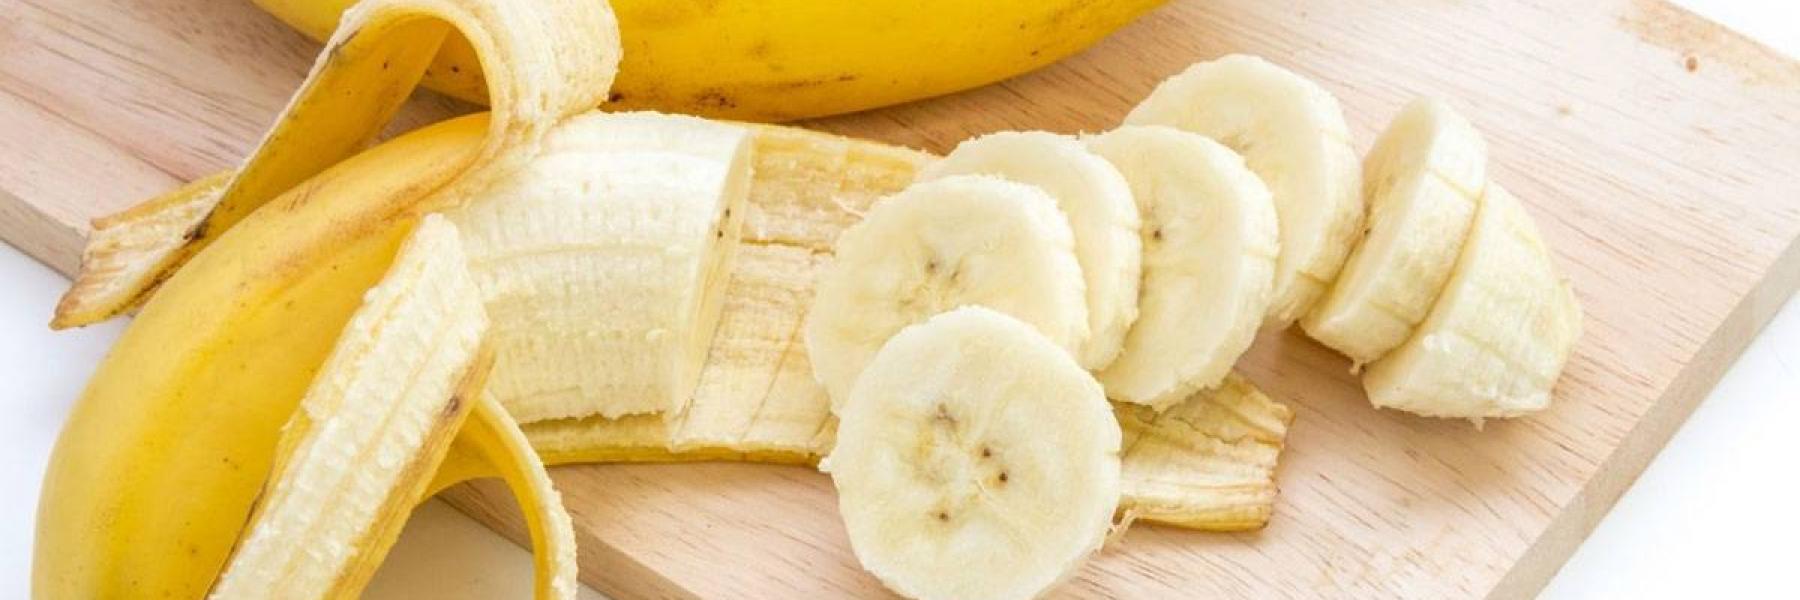 ما هي فوائد الموز للتخسيس؟